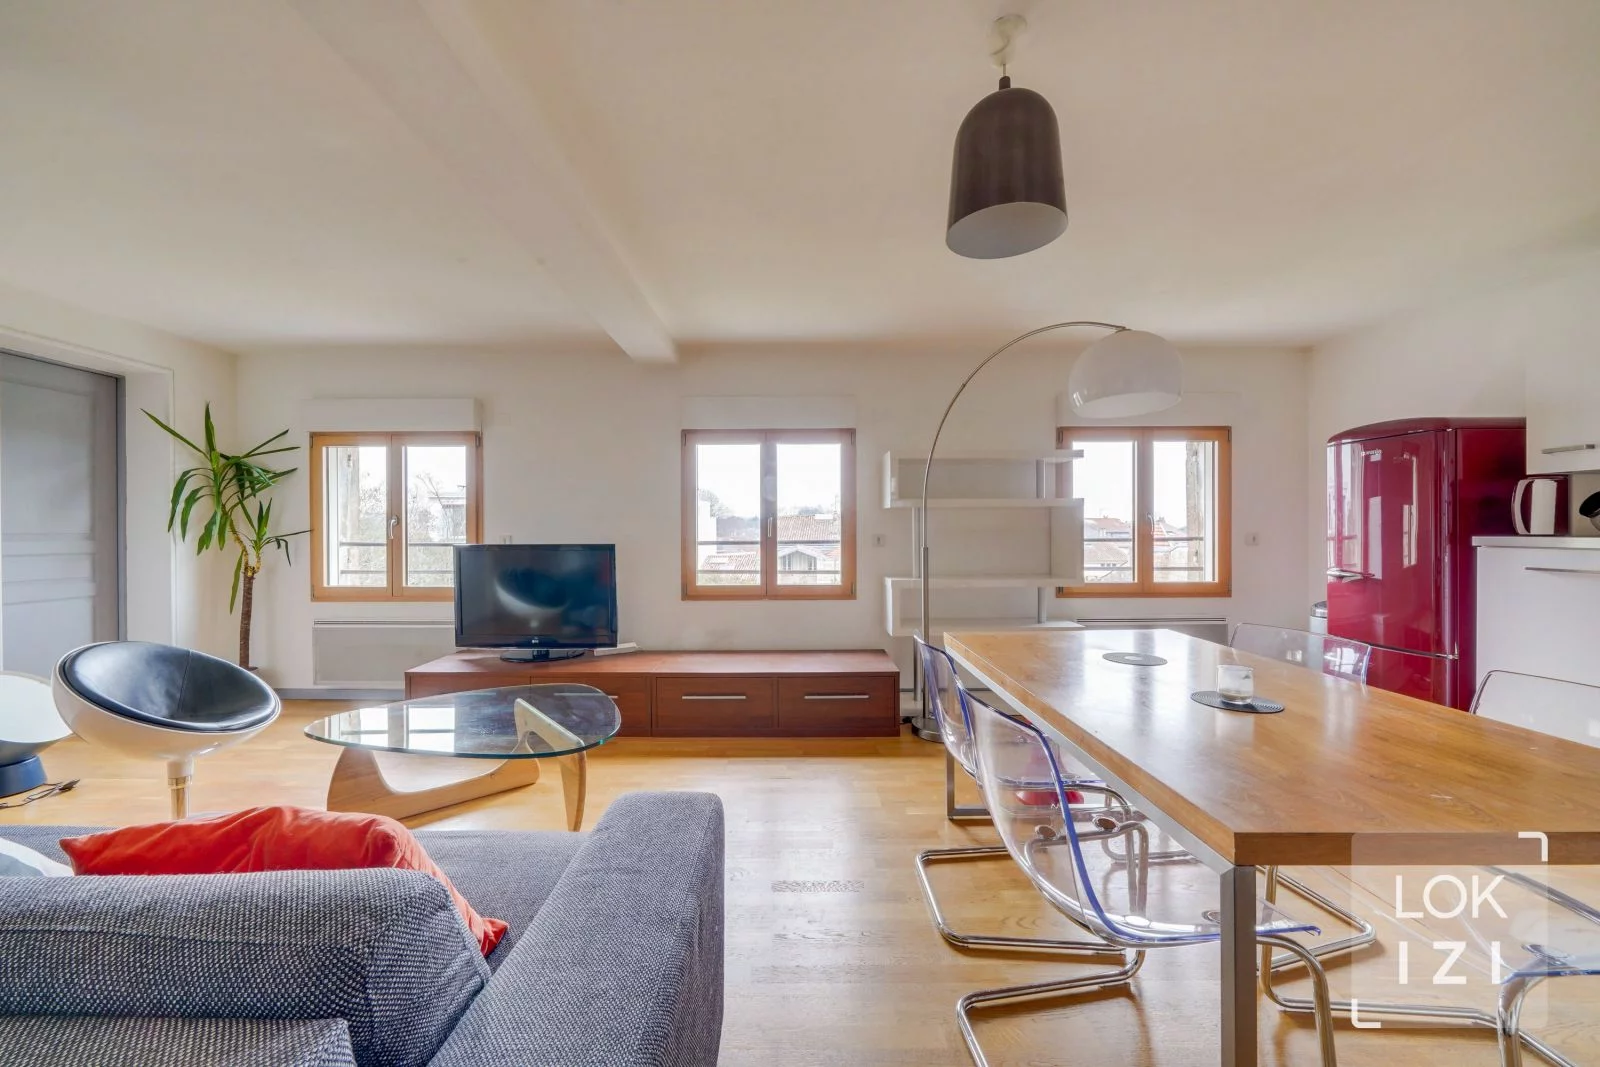 Location appartement meublé 4 pièces 95m² (Bordeaux - Barrière du Médoc)